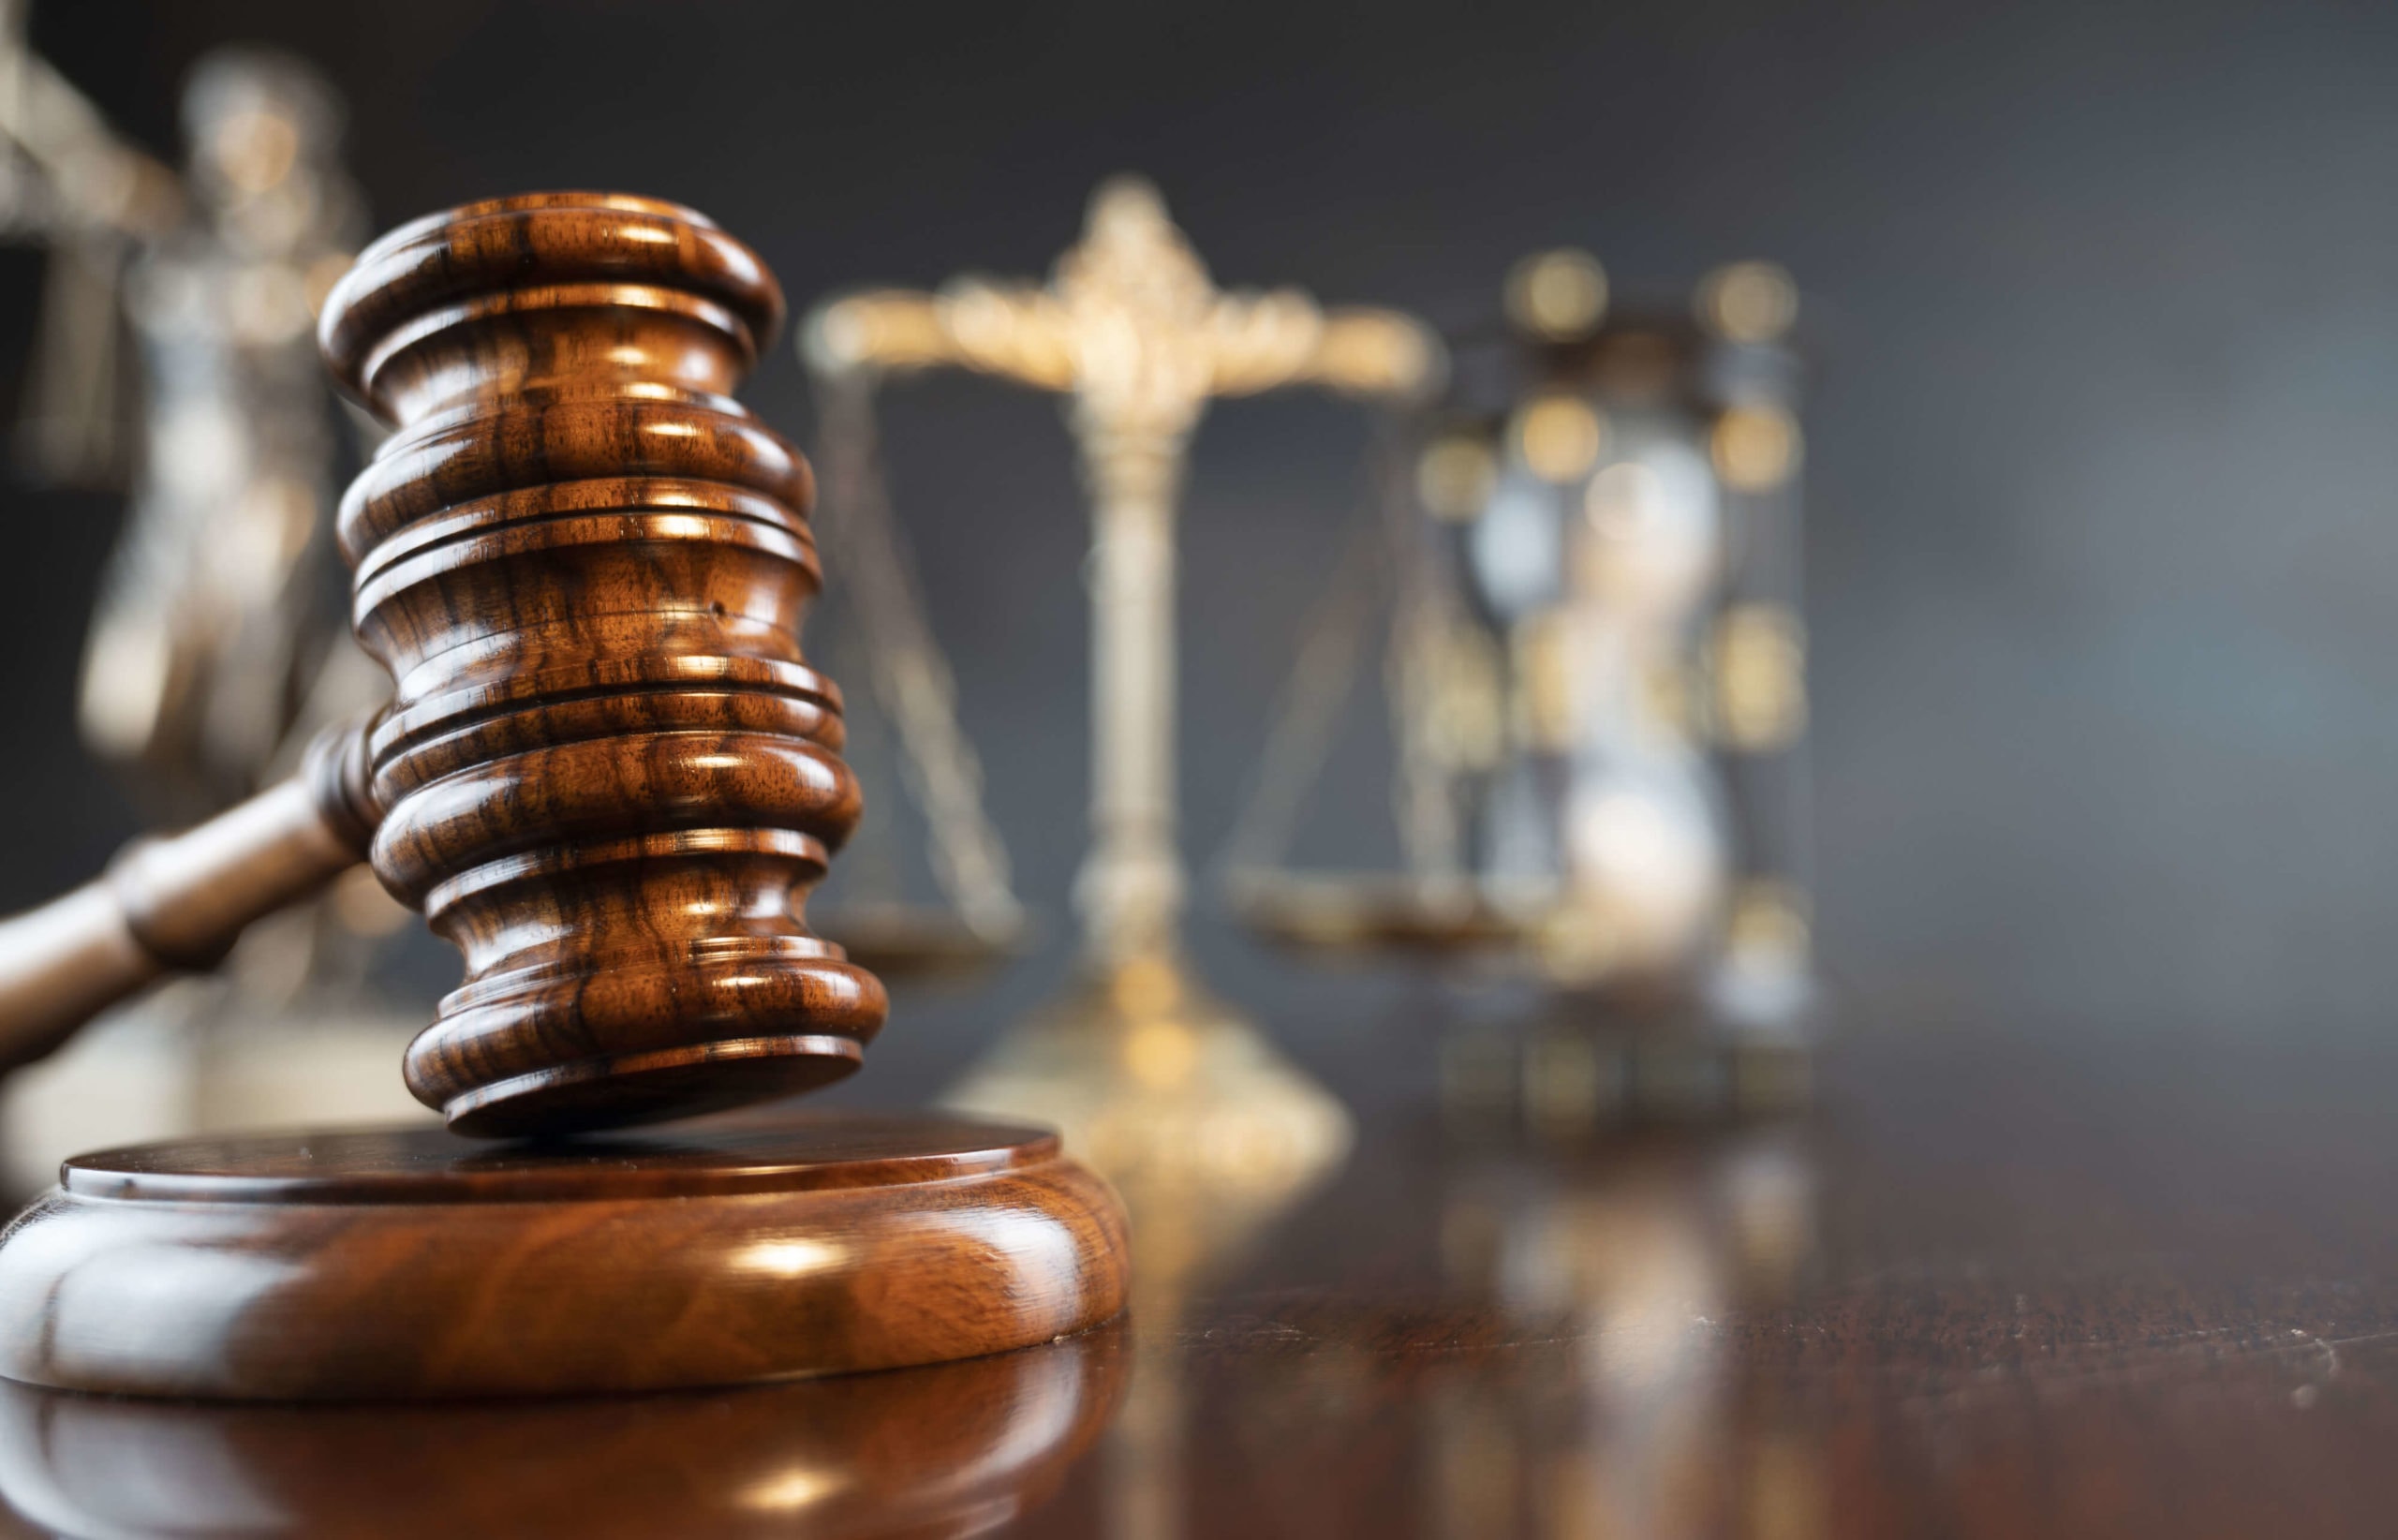 Elder abuse restraining order stays after appeal in $40 million estate wrangling